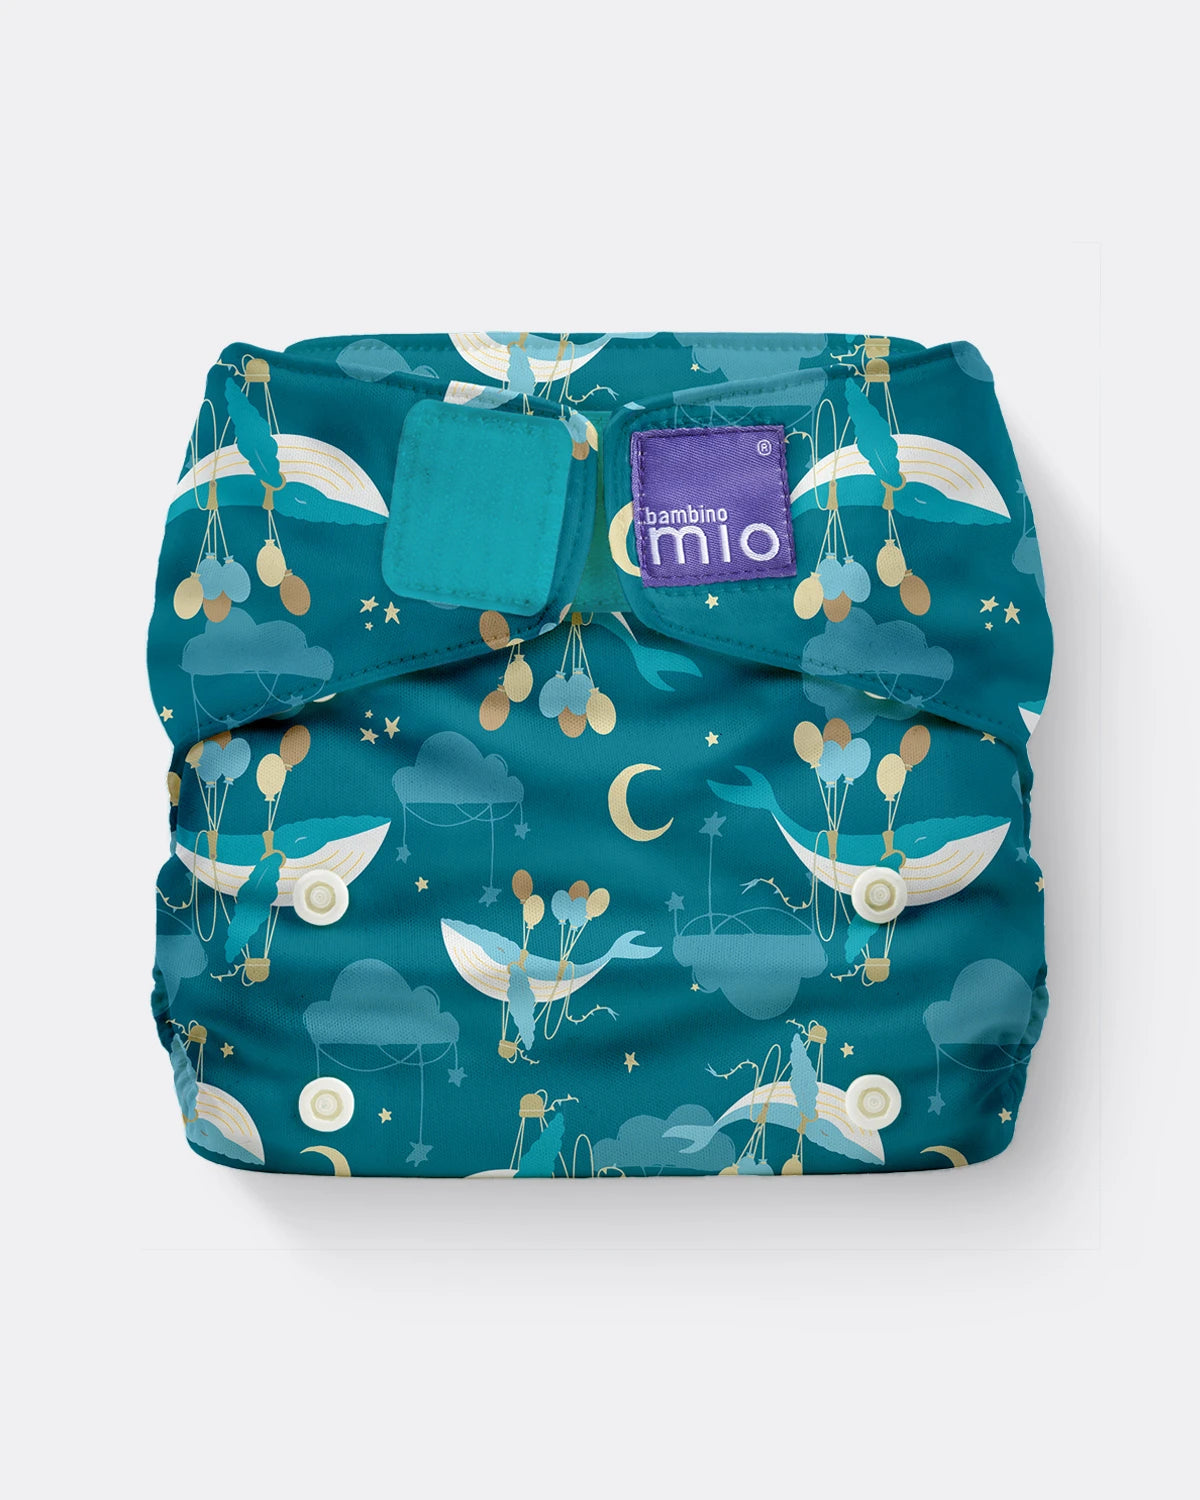 miosolo classic all-in-one diaper - Bambino Mio (EU)